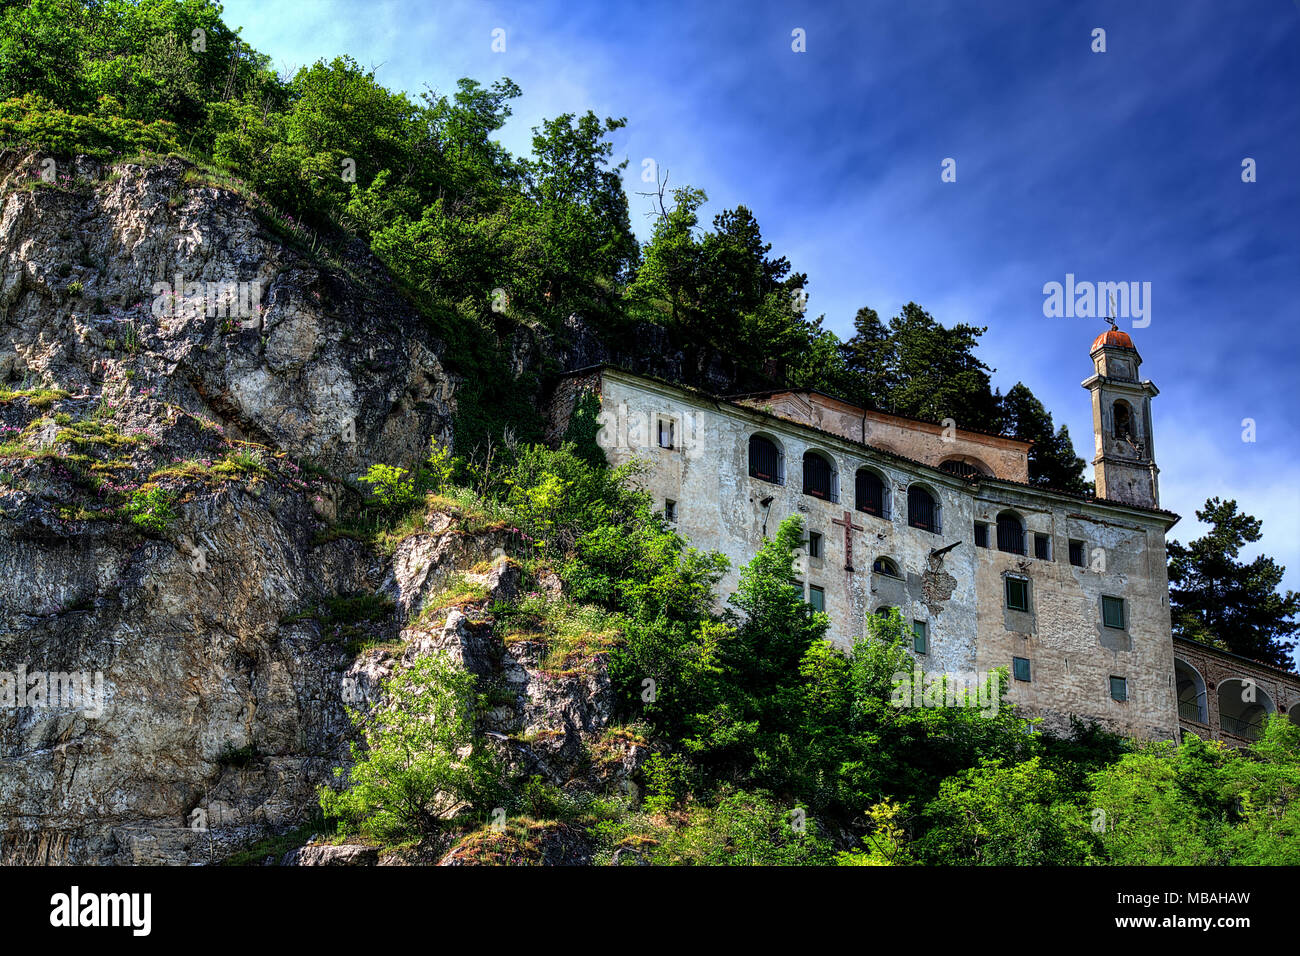 Le sanctuaire de Santa Lucia, en partie dans une caverne rocheuse, à Villanova Mondovì, en Piémont, Italie. Banque D'Images